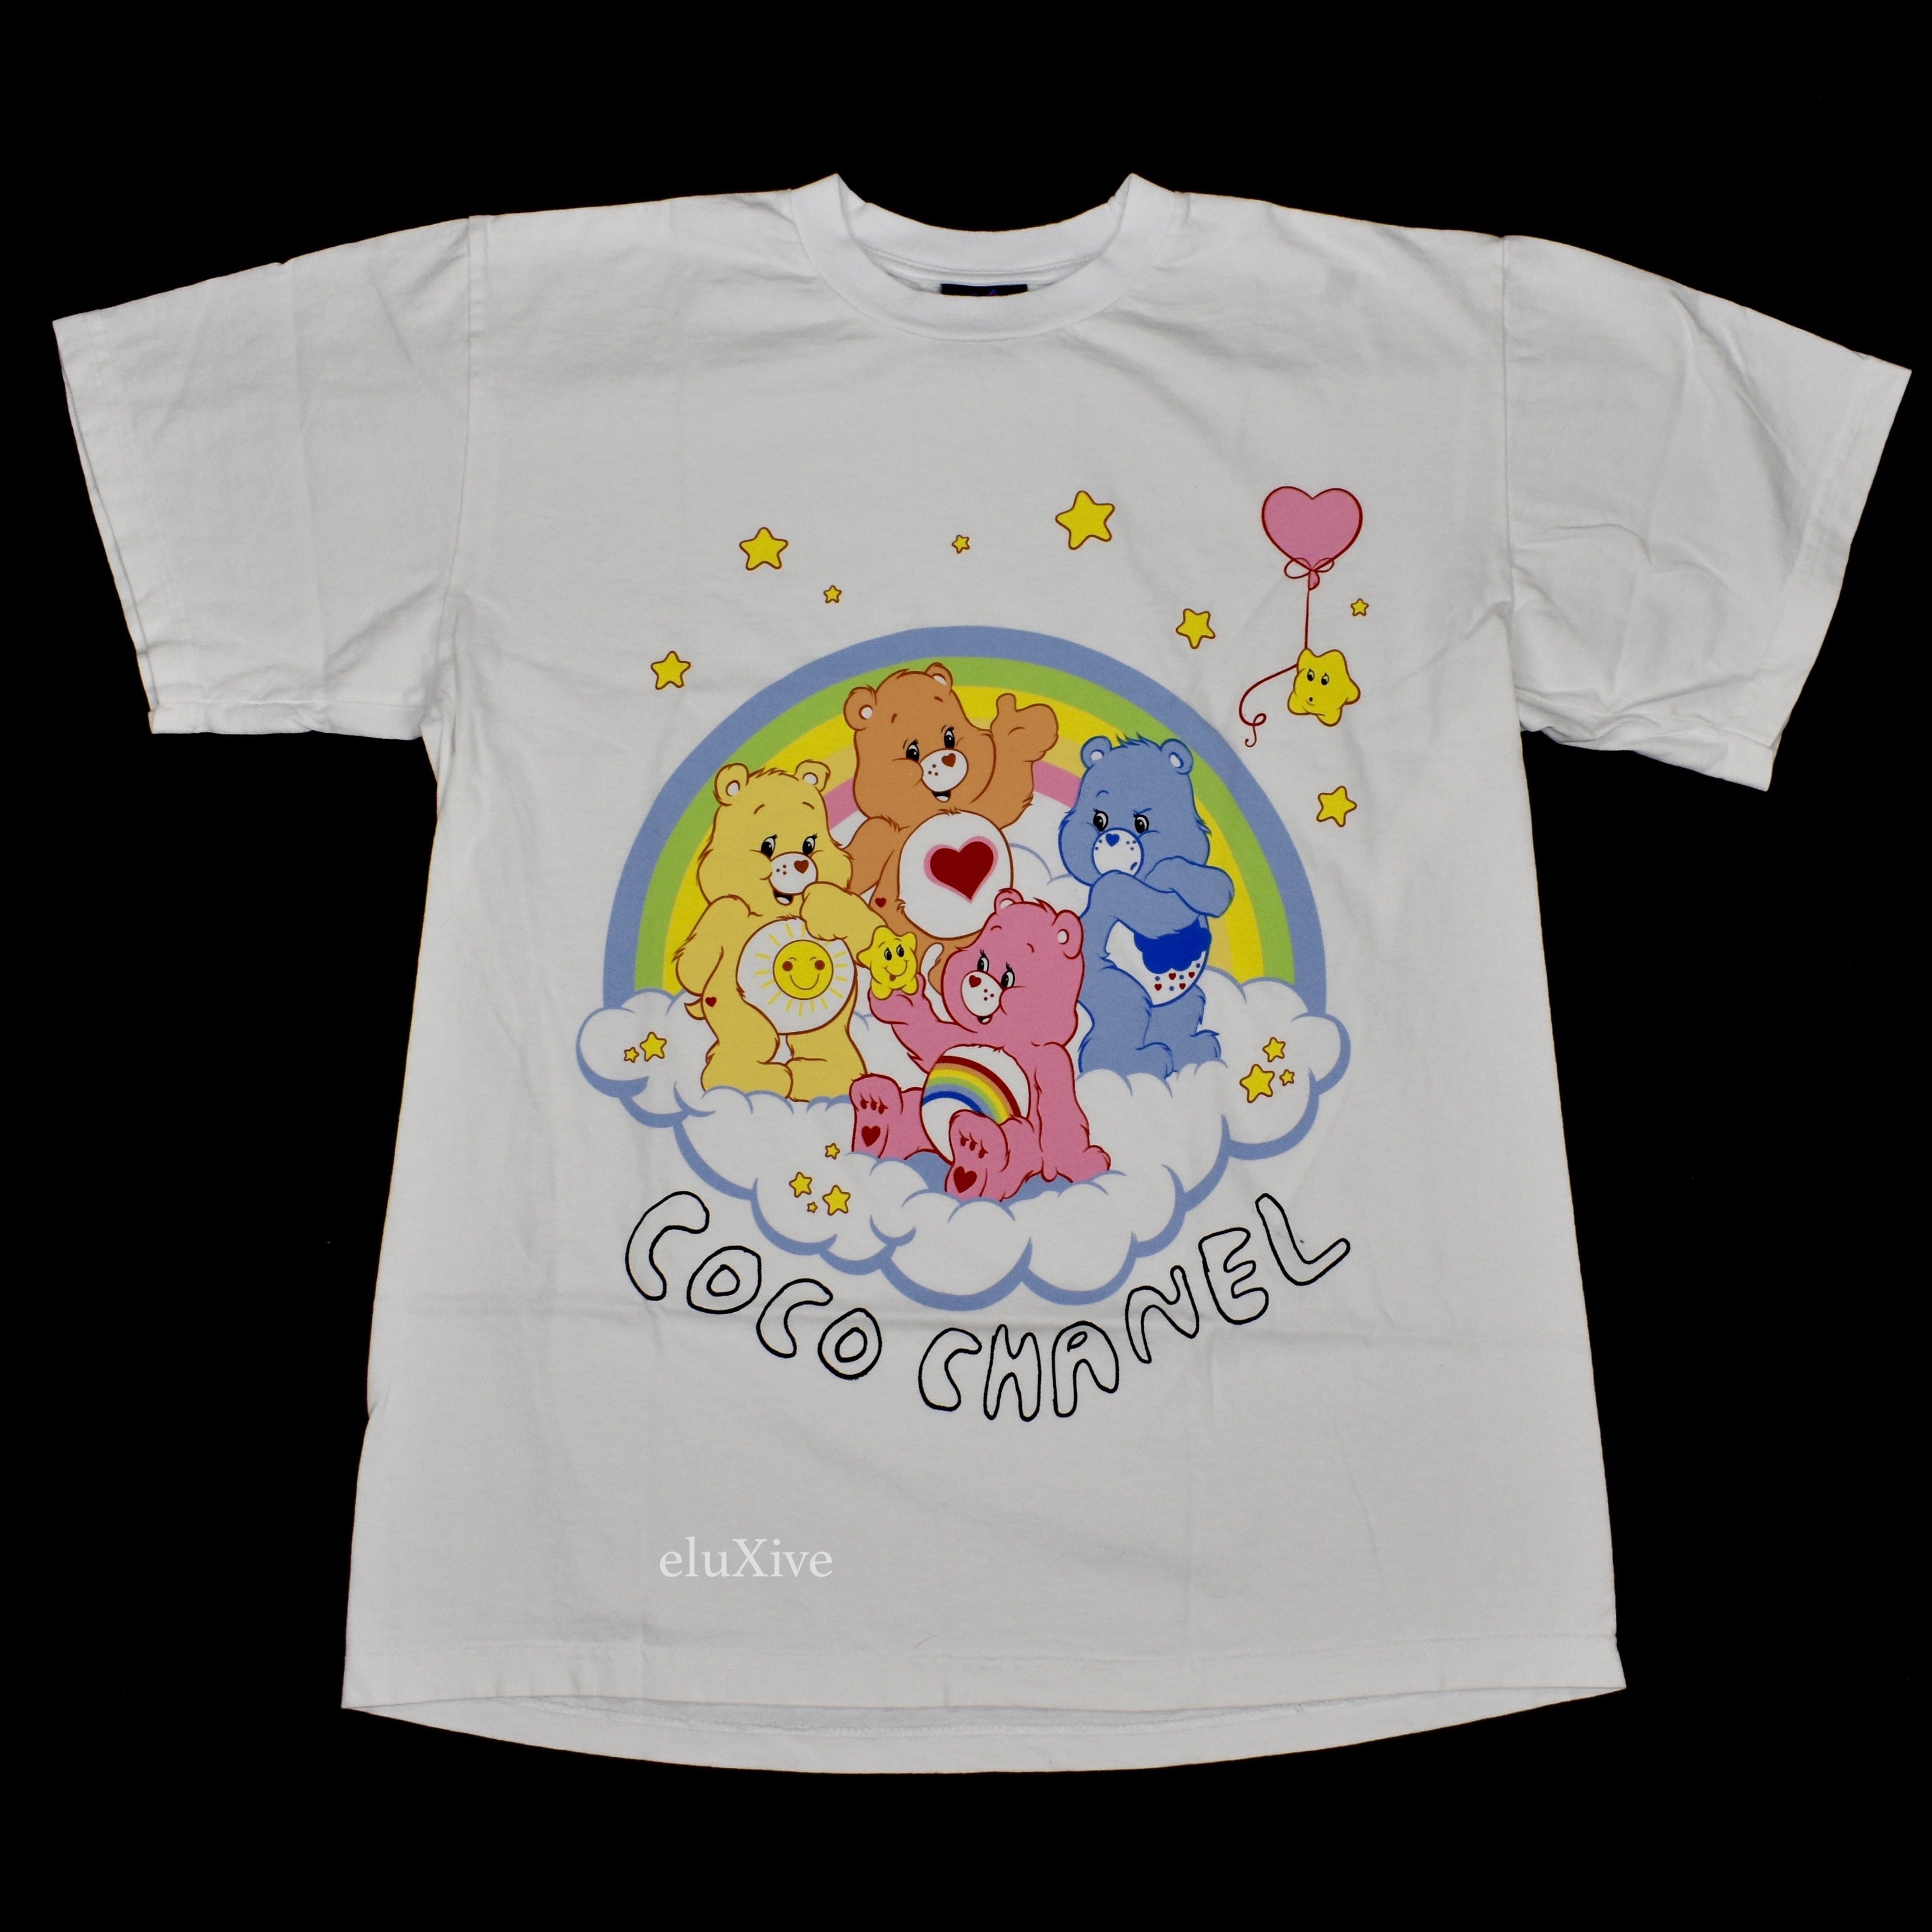 Mega Yacht Coco Chanel Casper T-Shirt, Tshirt, Hoodie, Sweatshirt